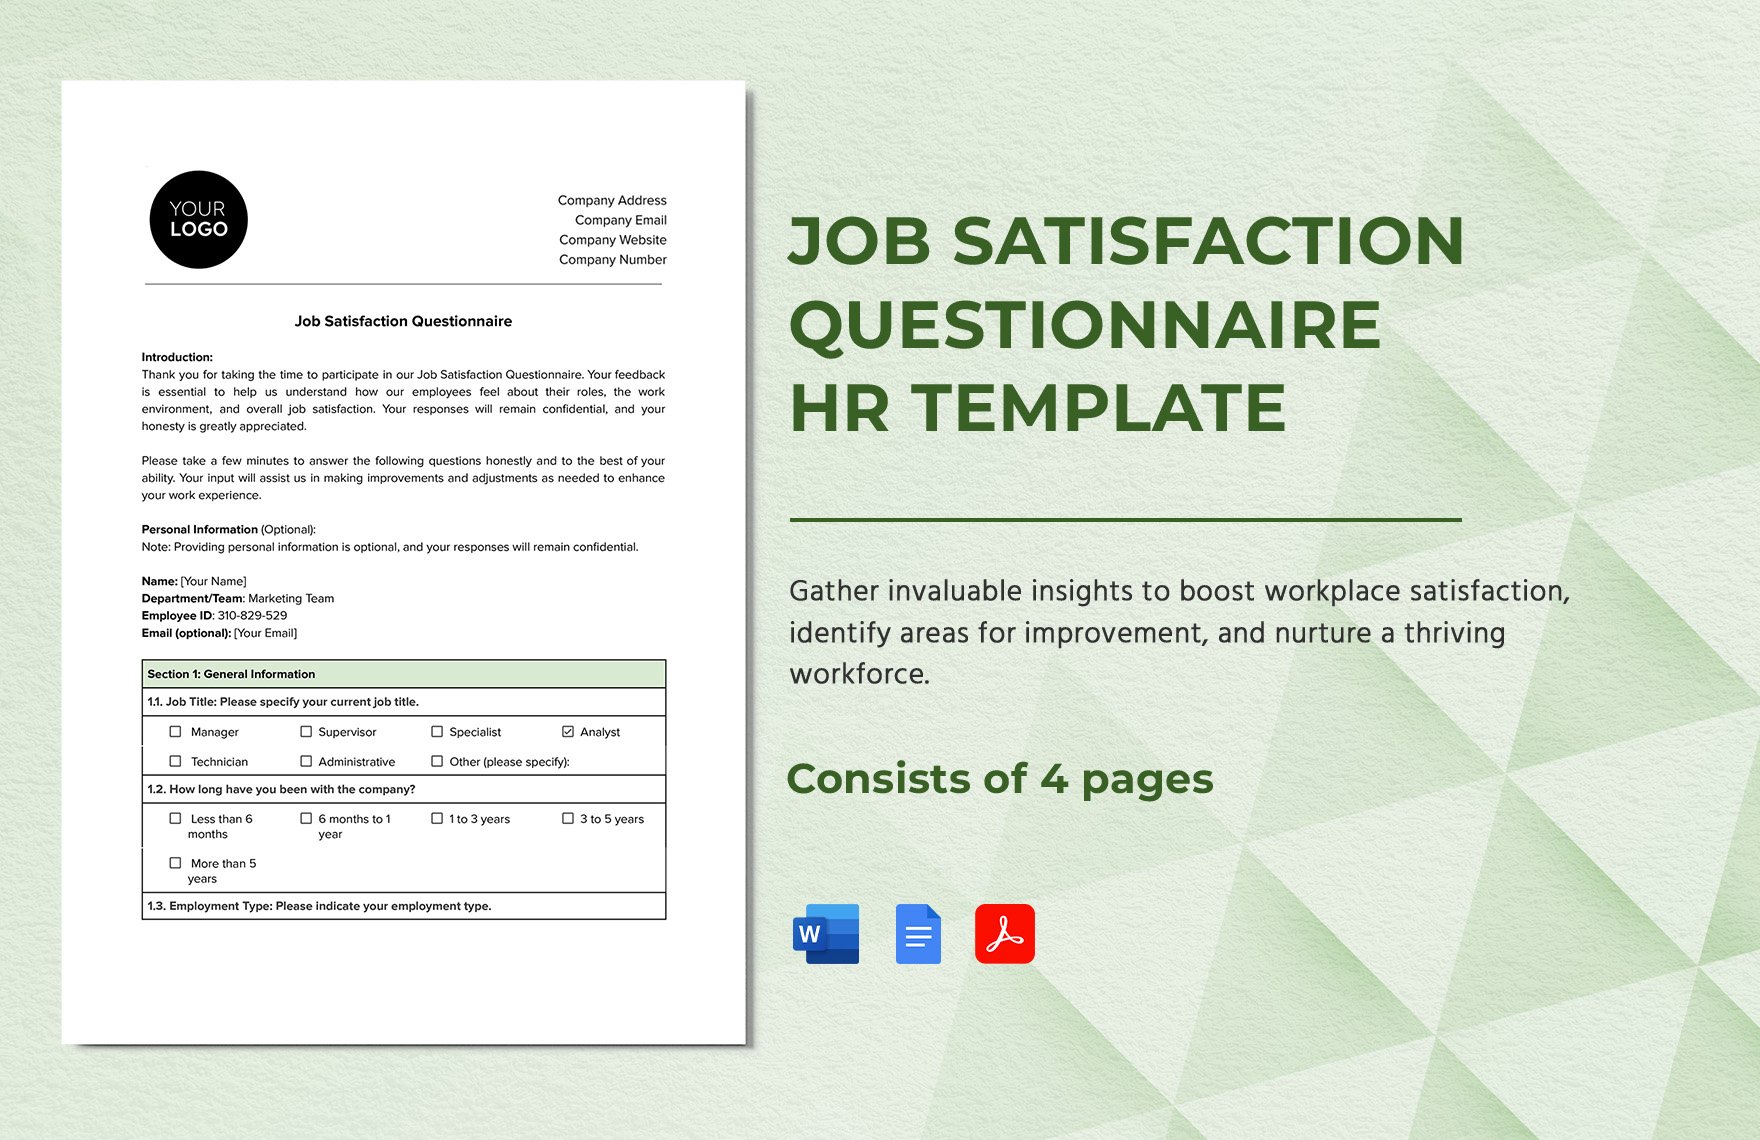 Job Satisfaction Questionnaire HR Template